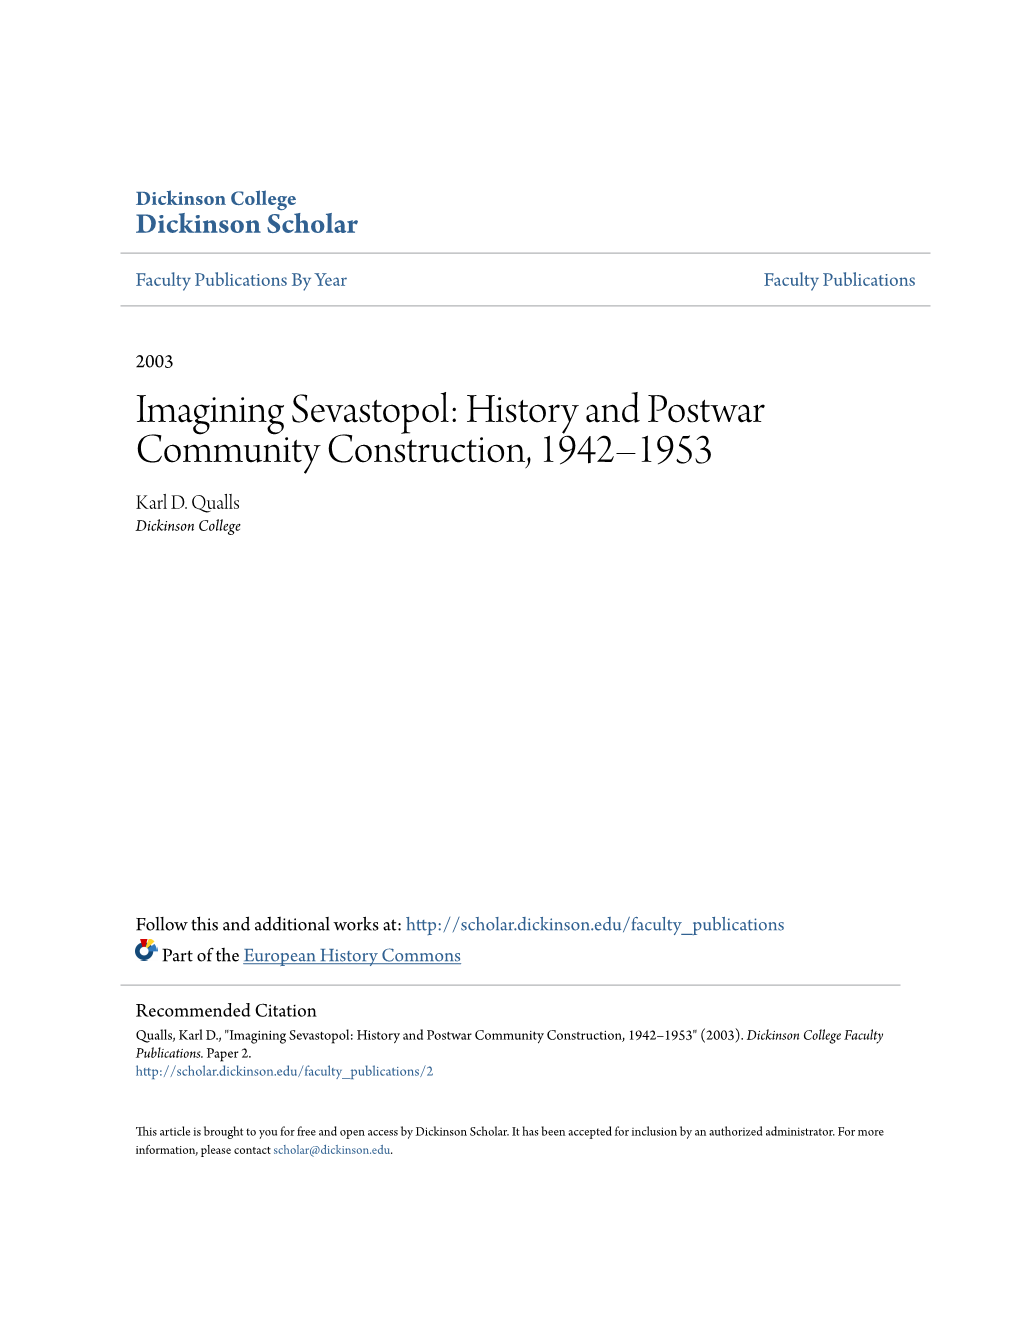 Imagining Sevastopol: History and Postwar Community Construction, 1942–1953 Karl D